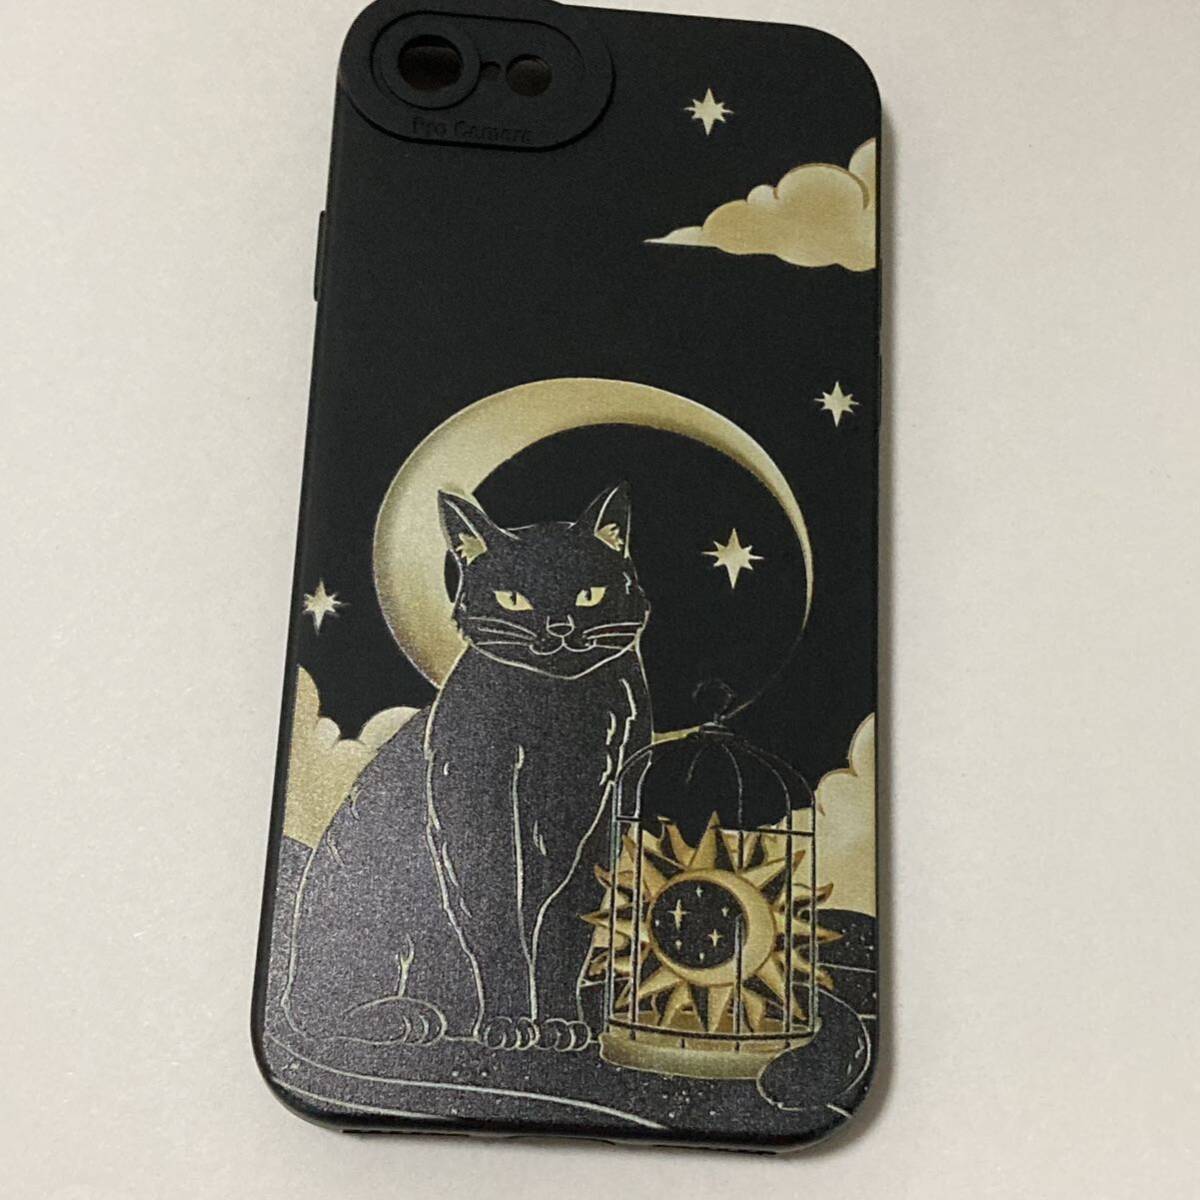 新品送料無料 おしゃれな黒猫の占い風iPhoneケース7/8/SE2.3用 ブラック ソフトケース 太陽と月と星と雲 太陰太極 タロットカード風_画像3